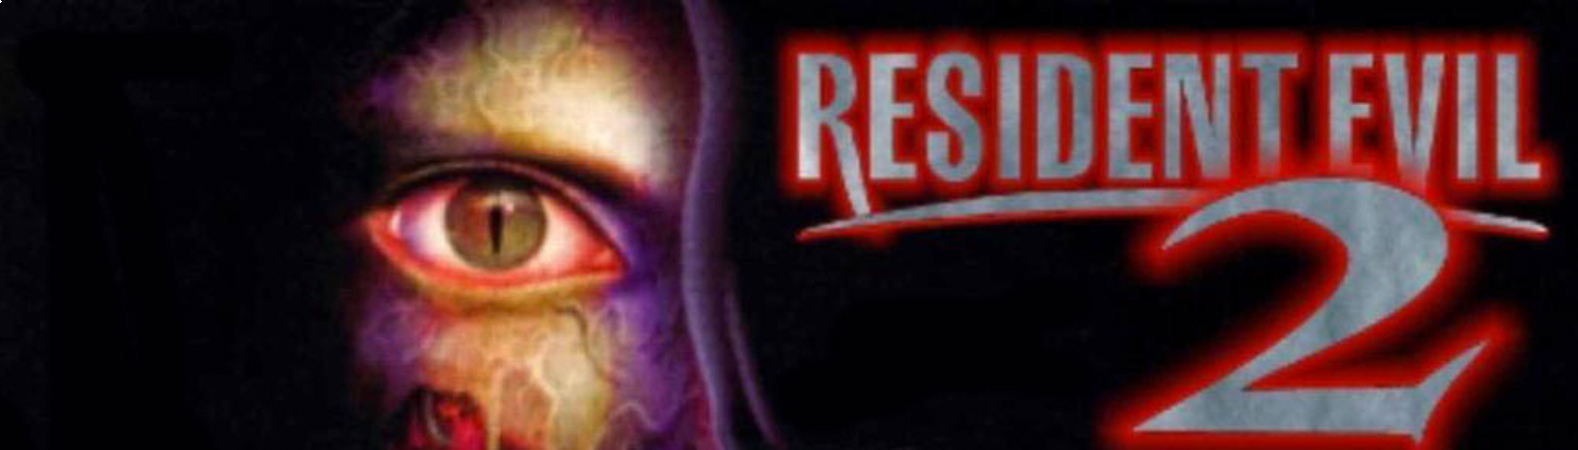 Banner Resident Evil 2